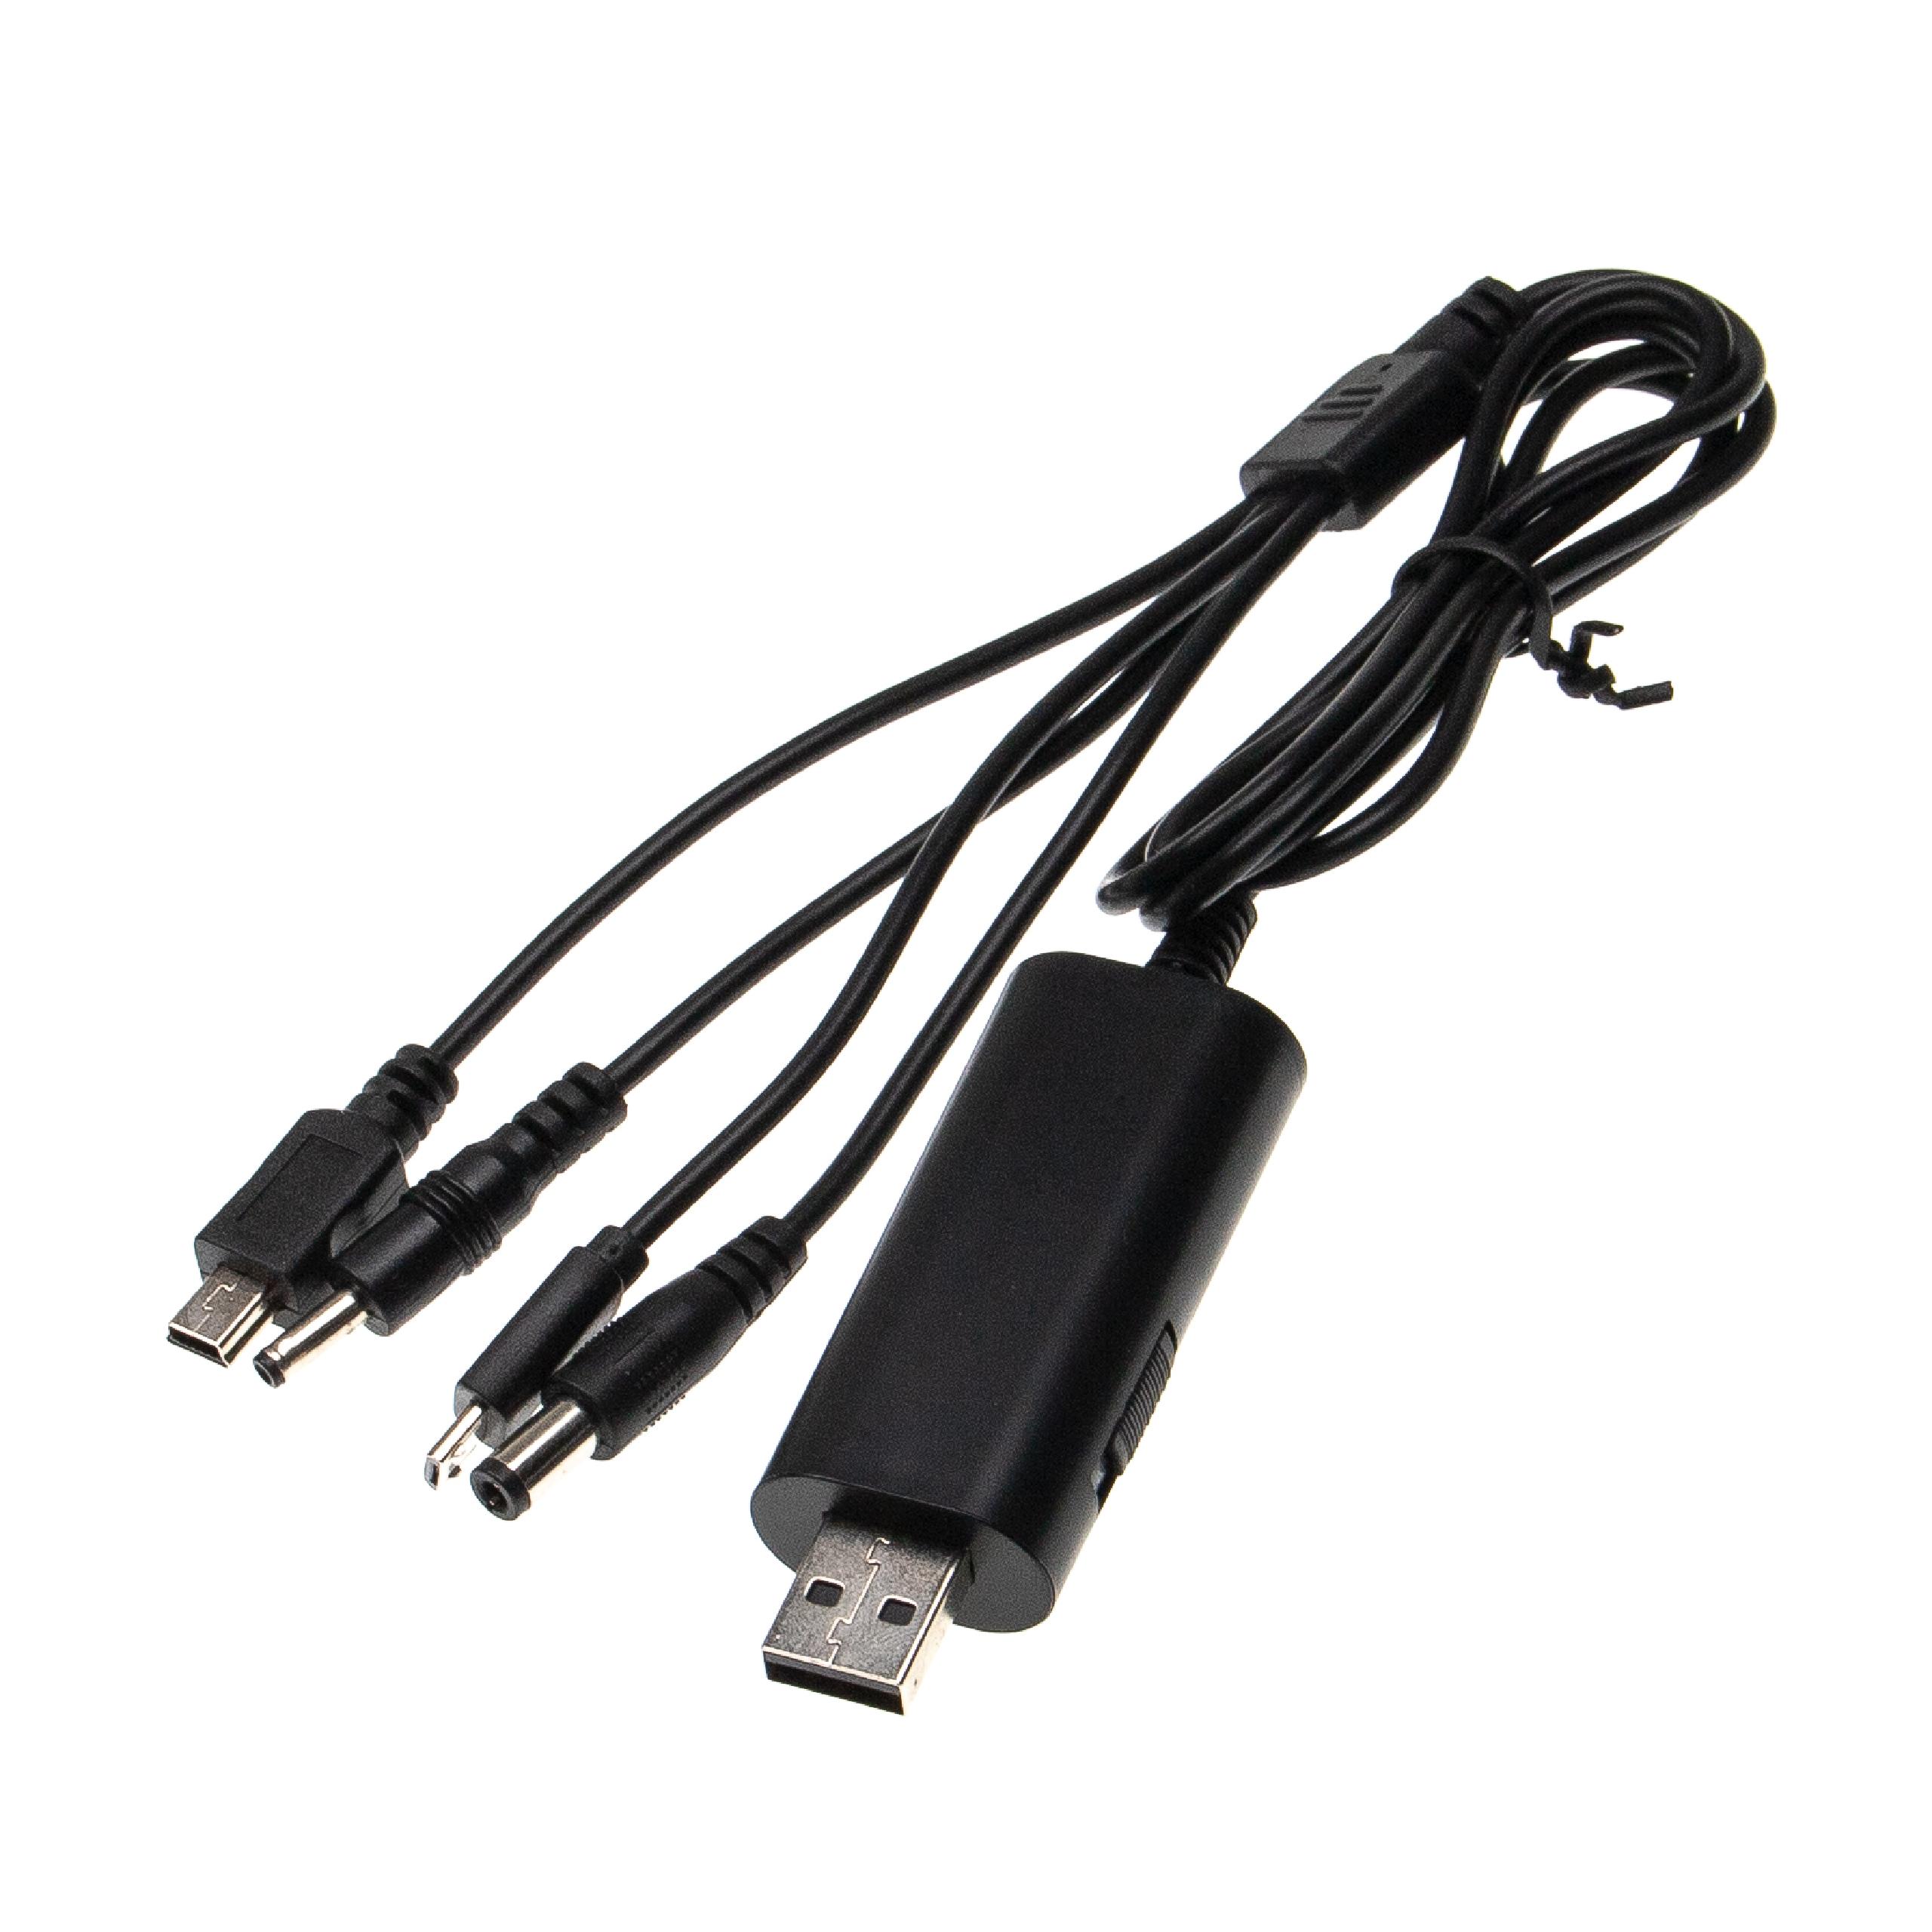 vhbw Cable USB universal multi USB diversos dispositivos, por ej. teléfonos, móviles, smartphones - Cable adap